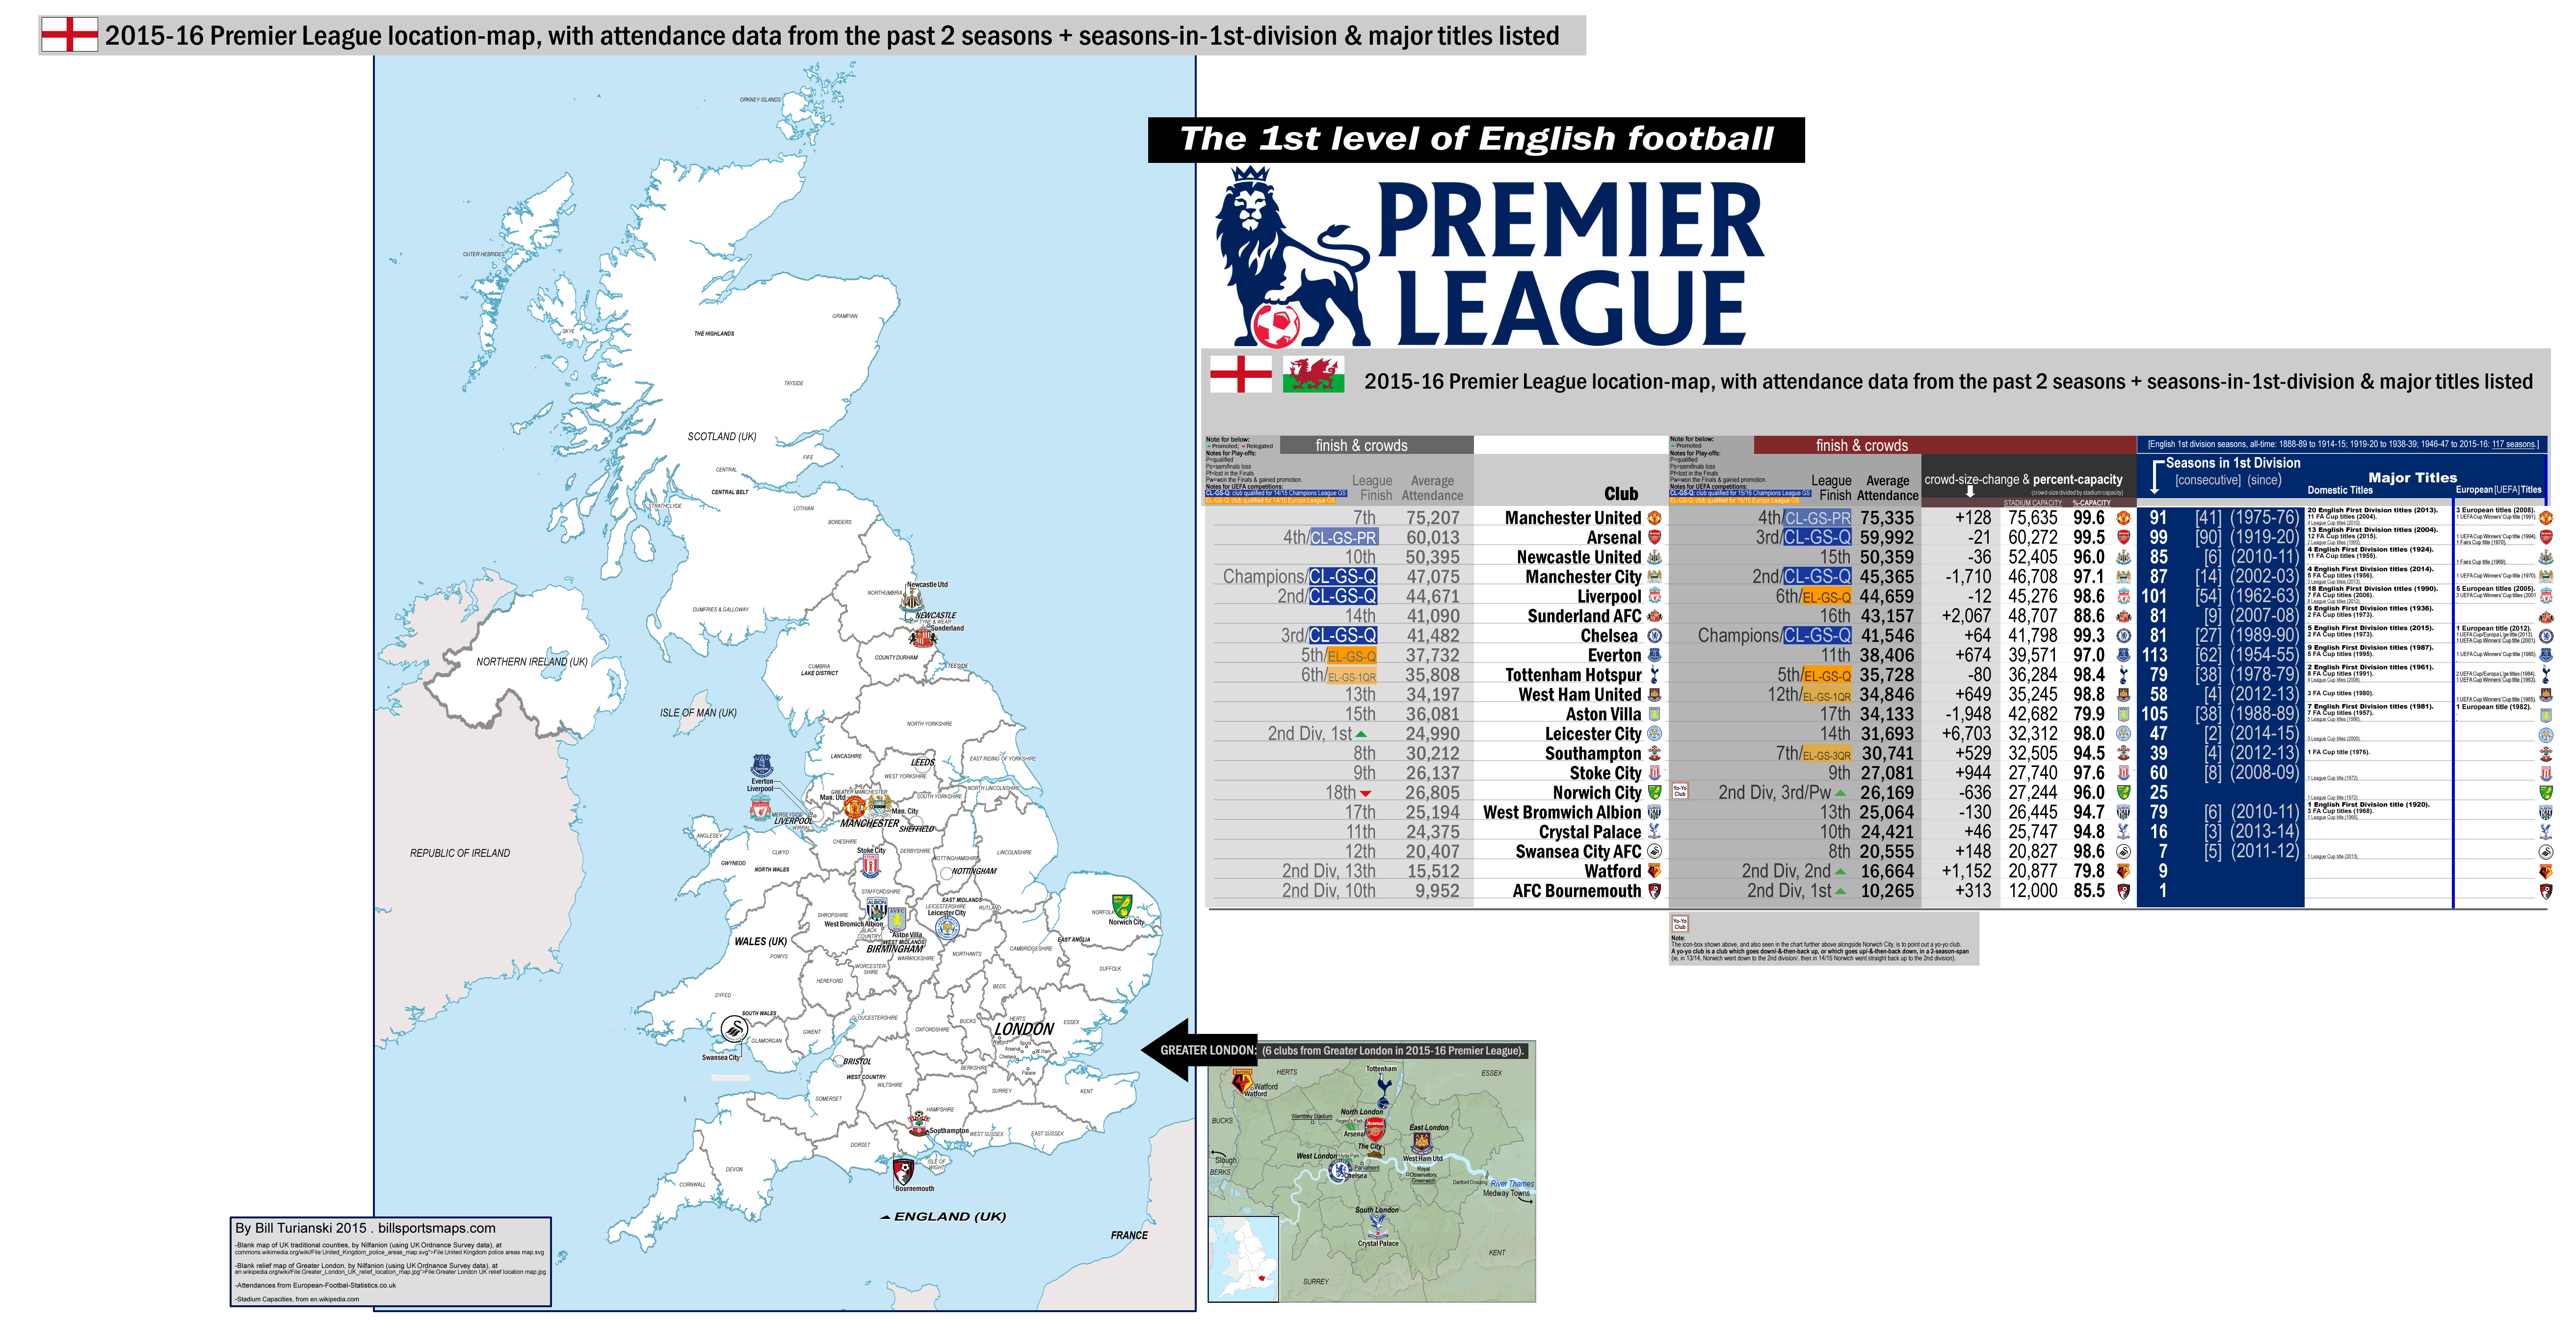 England: Premier League [1st division], 2015-16 location-map with: 14/15 attendances ...